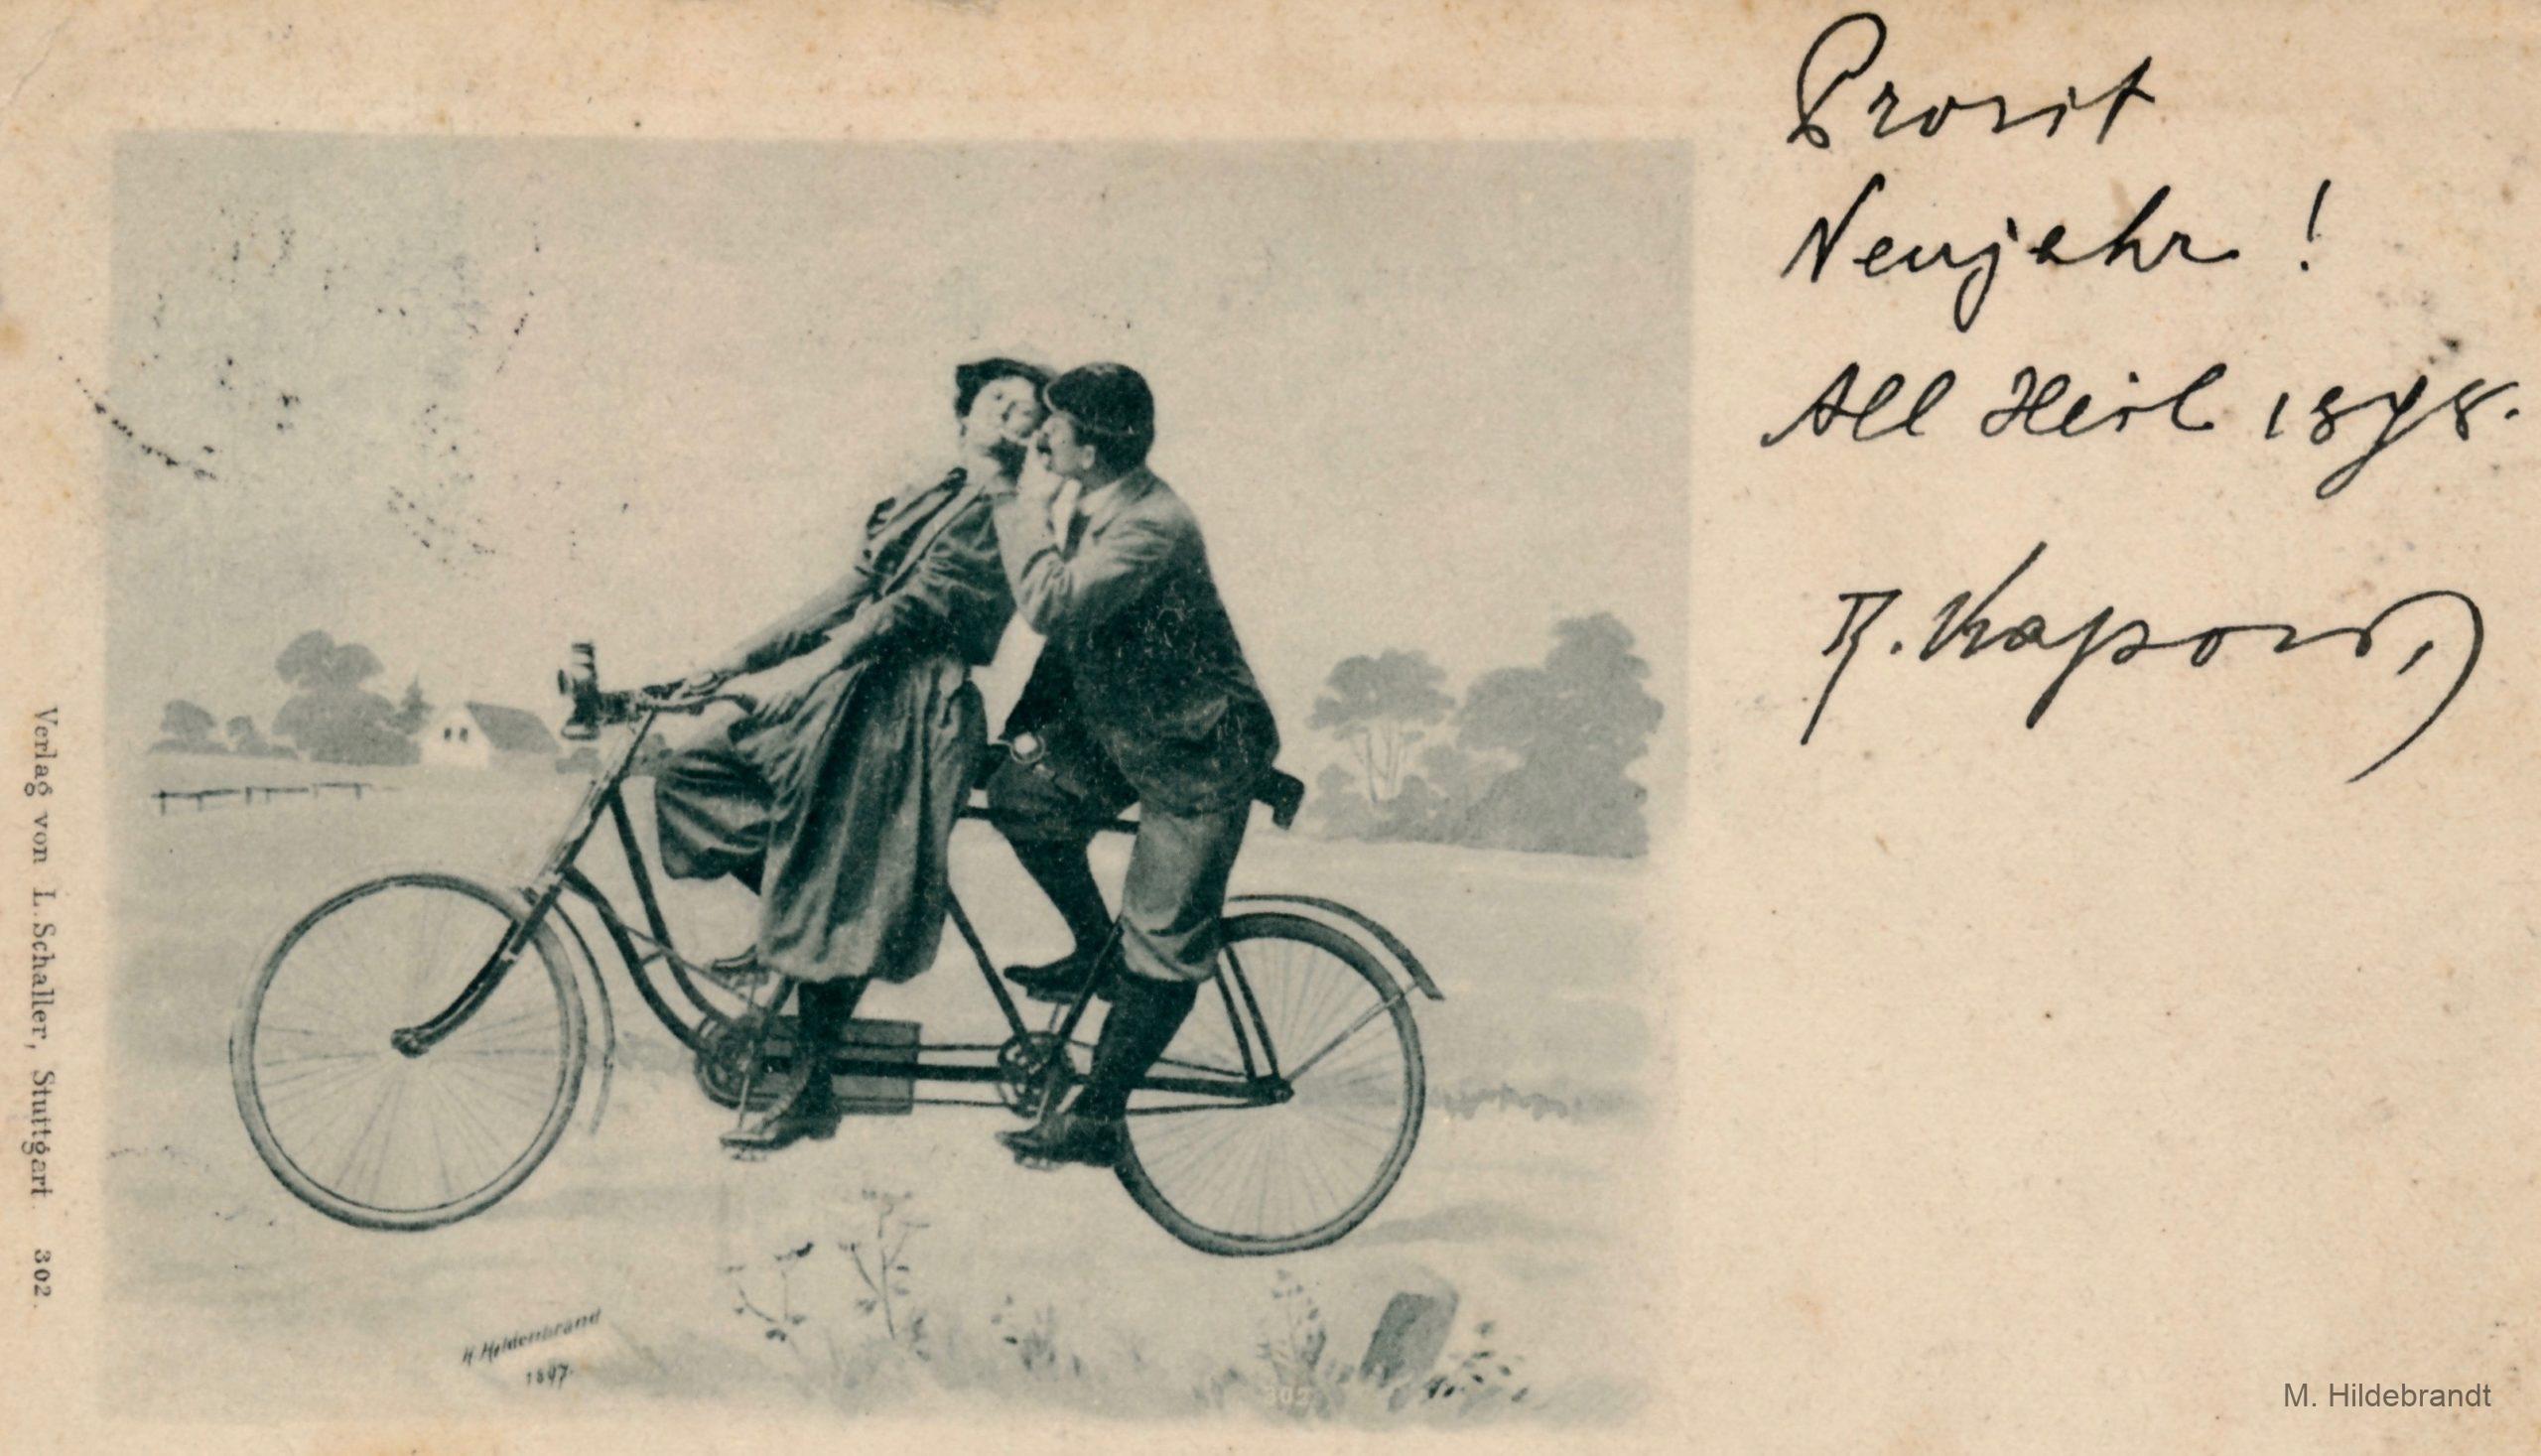 FahrradSport ab 1896 auf Ansichtskarten hildebrandtvs.de